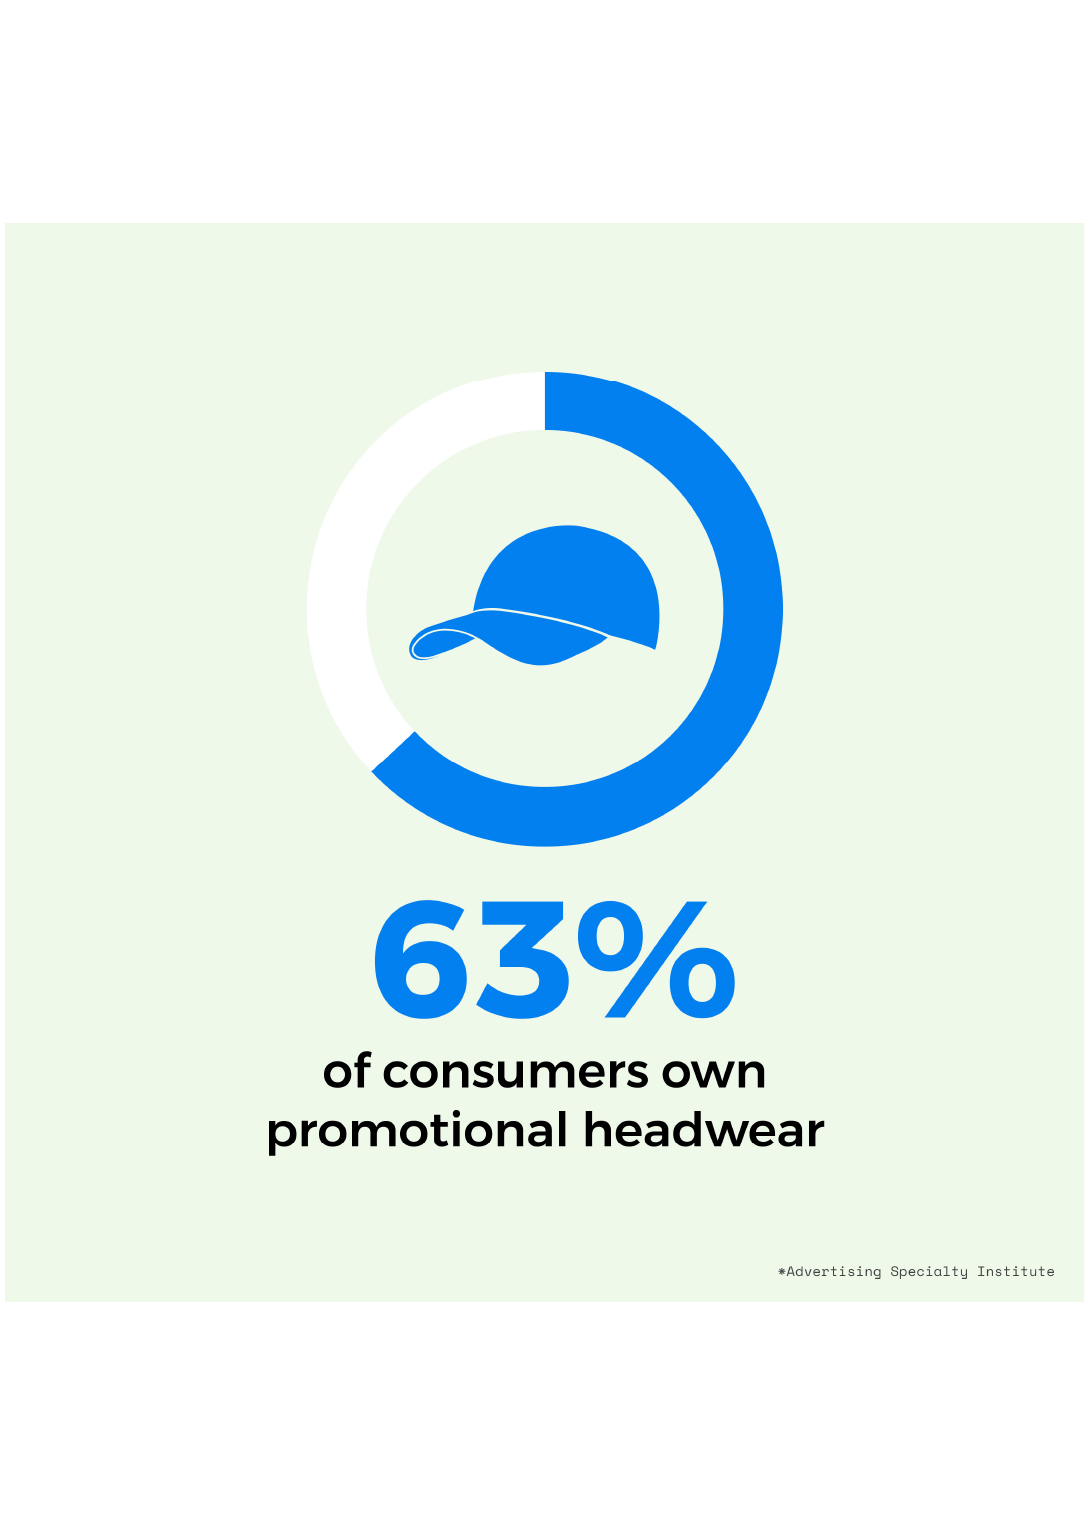 63% own promotional headwear